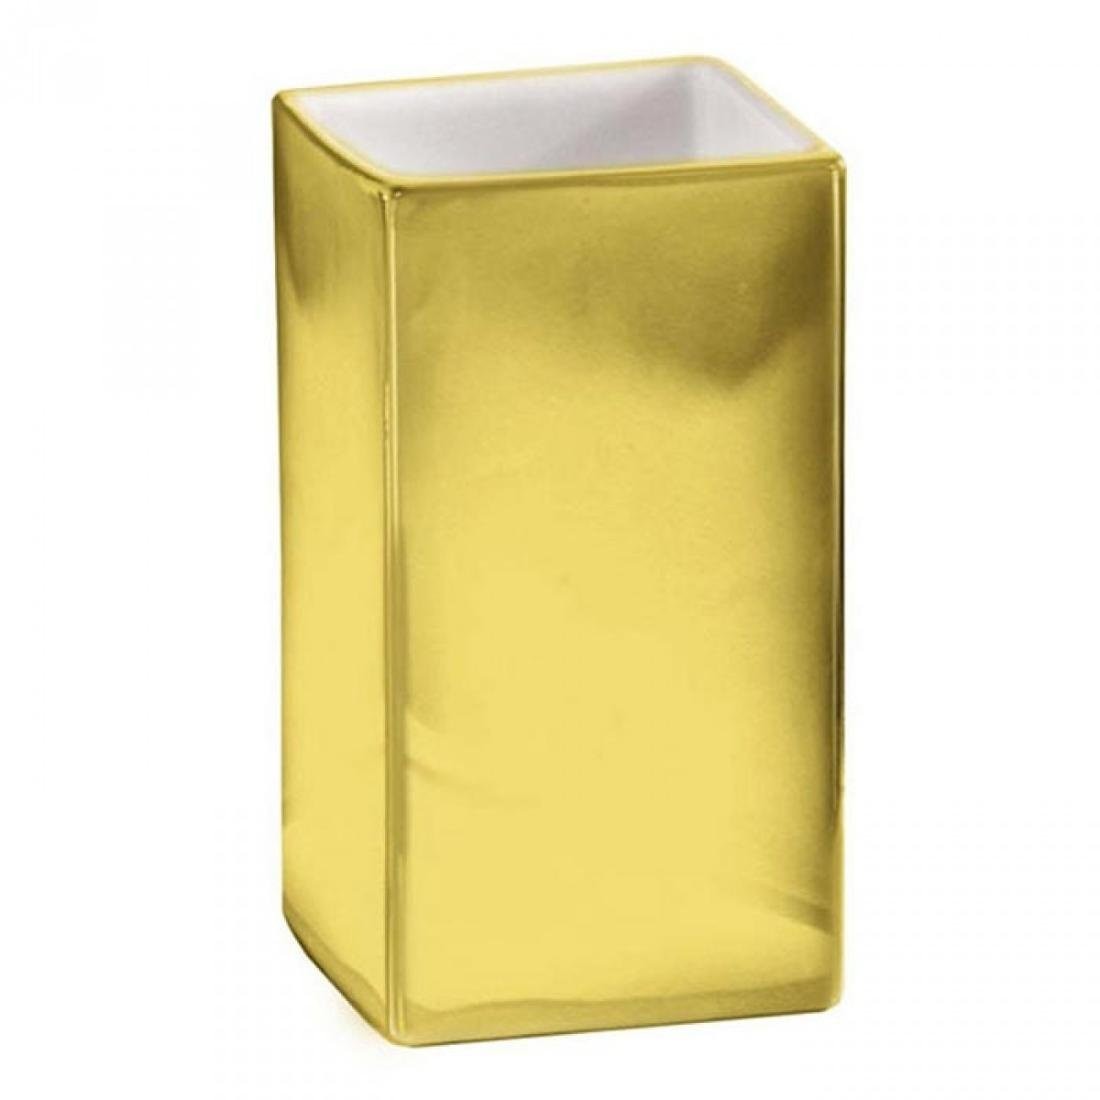 Kleine Wolke Glamour Kubek na szczoteczki, złoty, 10x16 cm